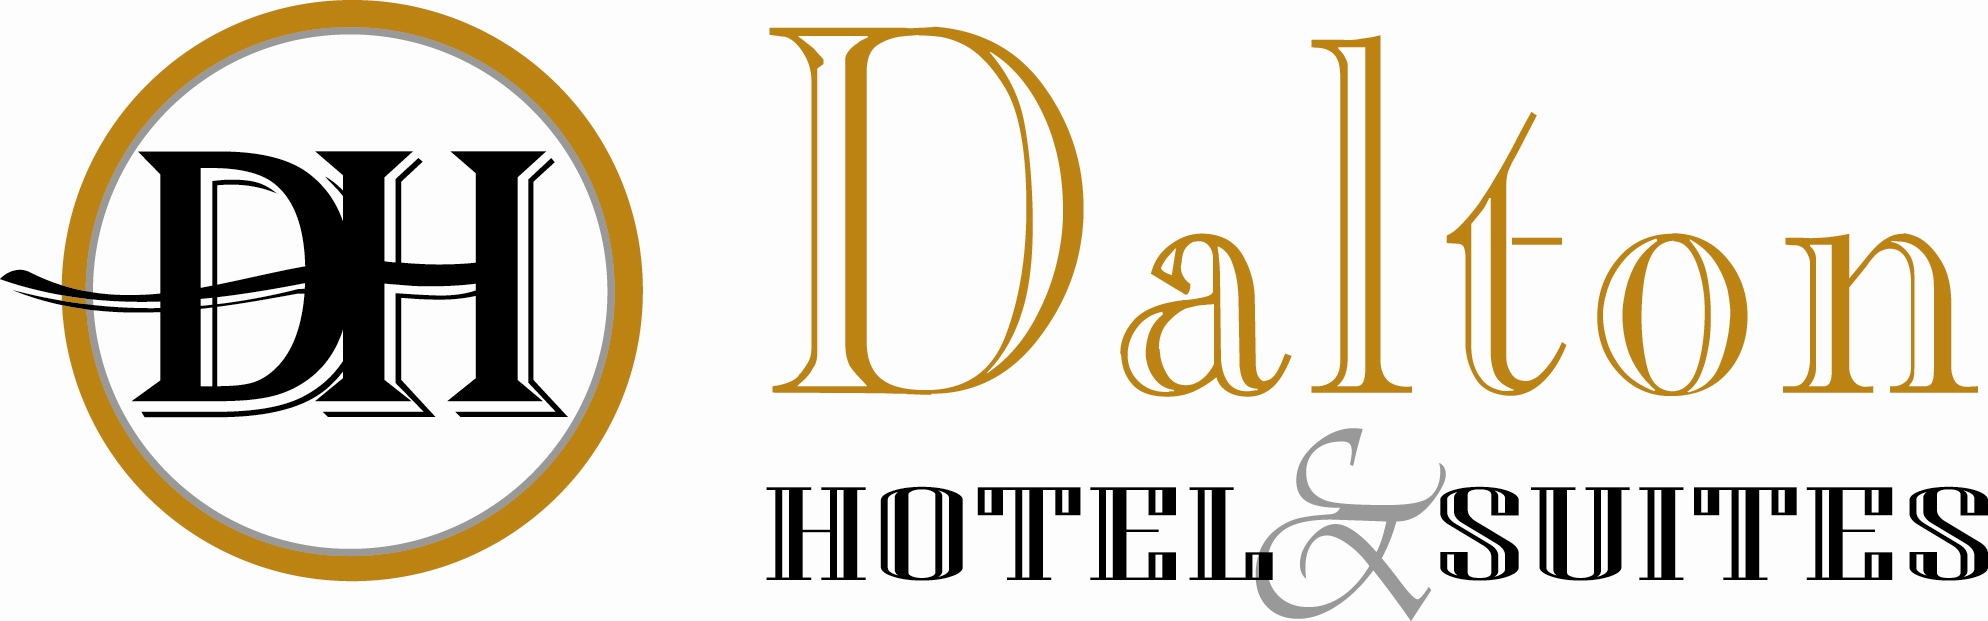 Dalton Hotel & Suites